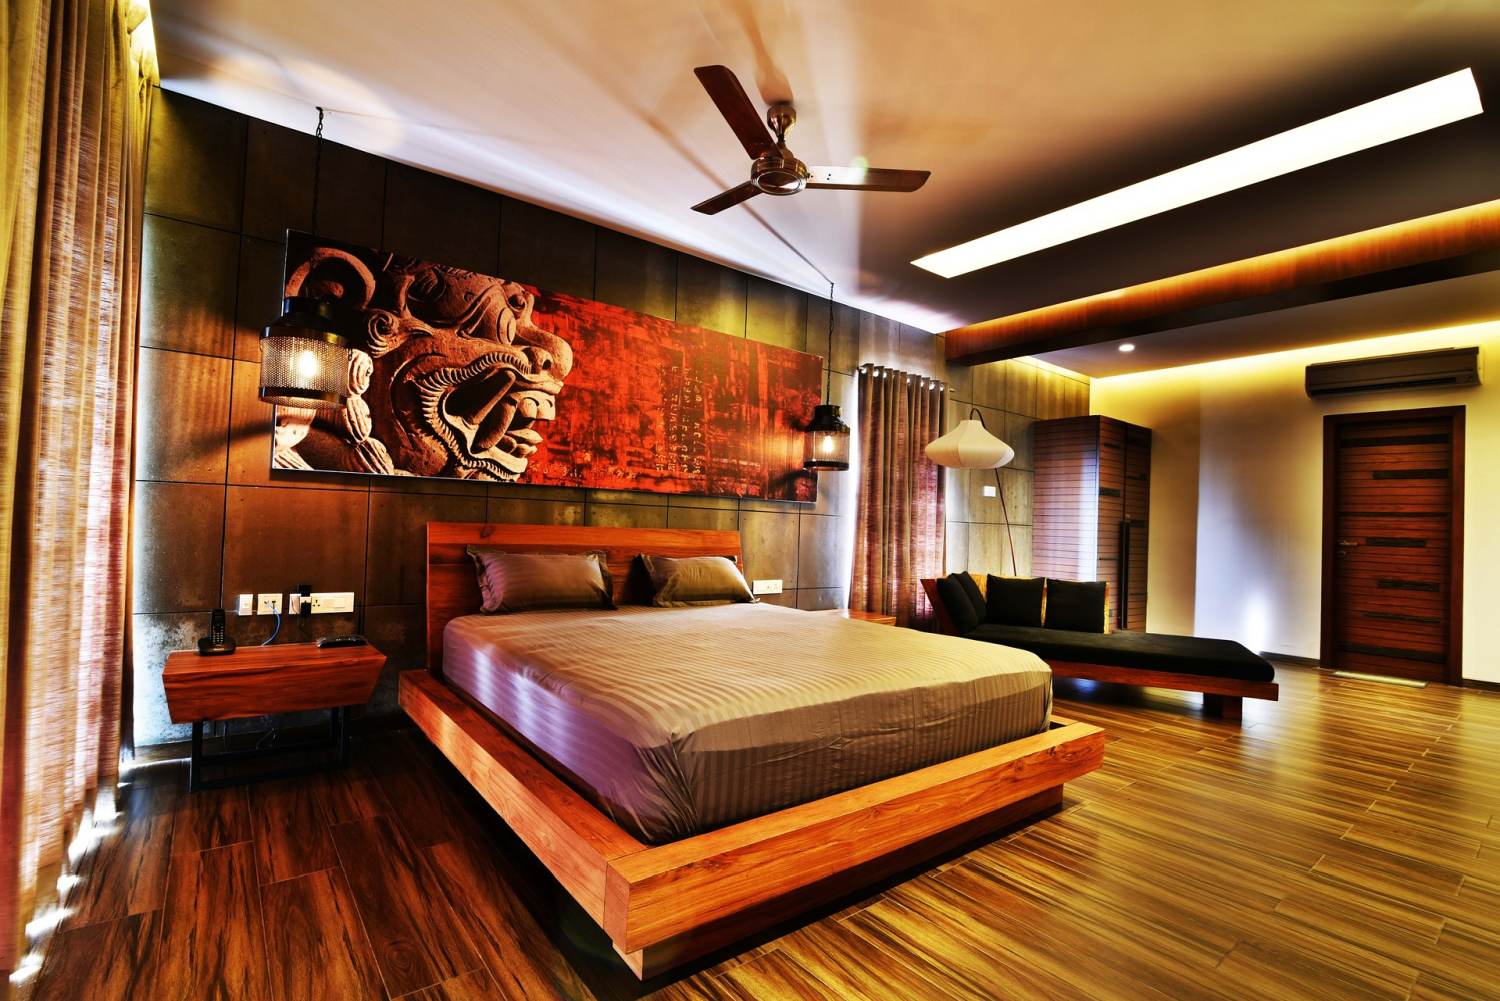 kolory do mieszkania w stylu orientalnym, styl orientalny w mieszkaniu, styl orientalny kolory